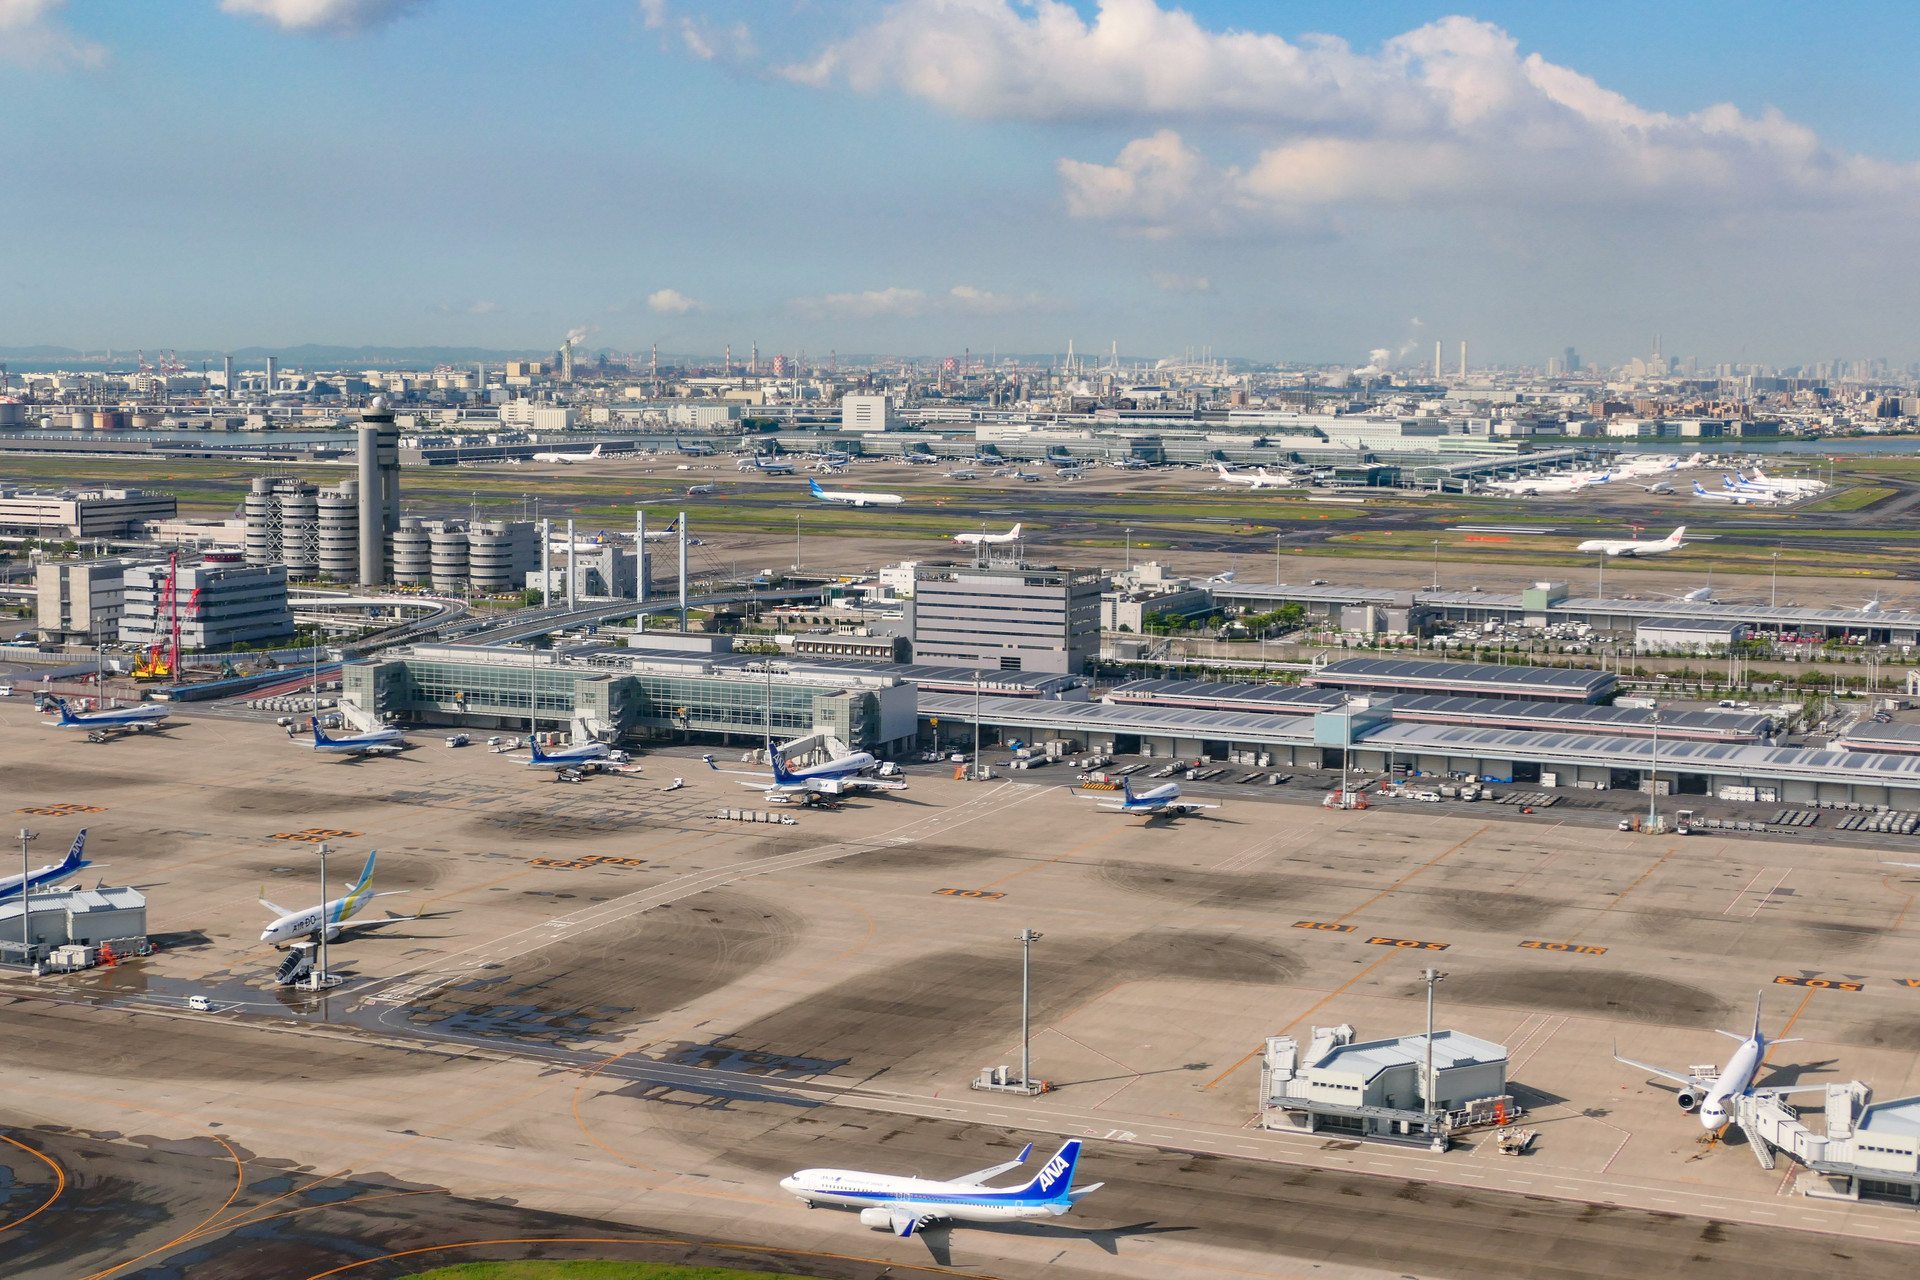 Sân bay Haneda (HND) nằm ở vị trí thứ 4 (Hình minh họa)